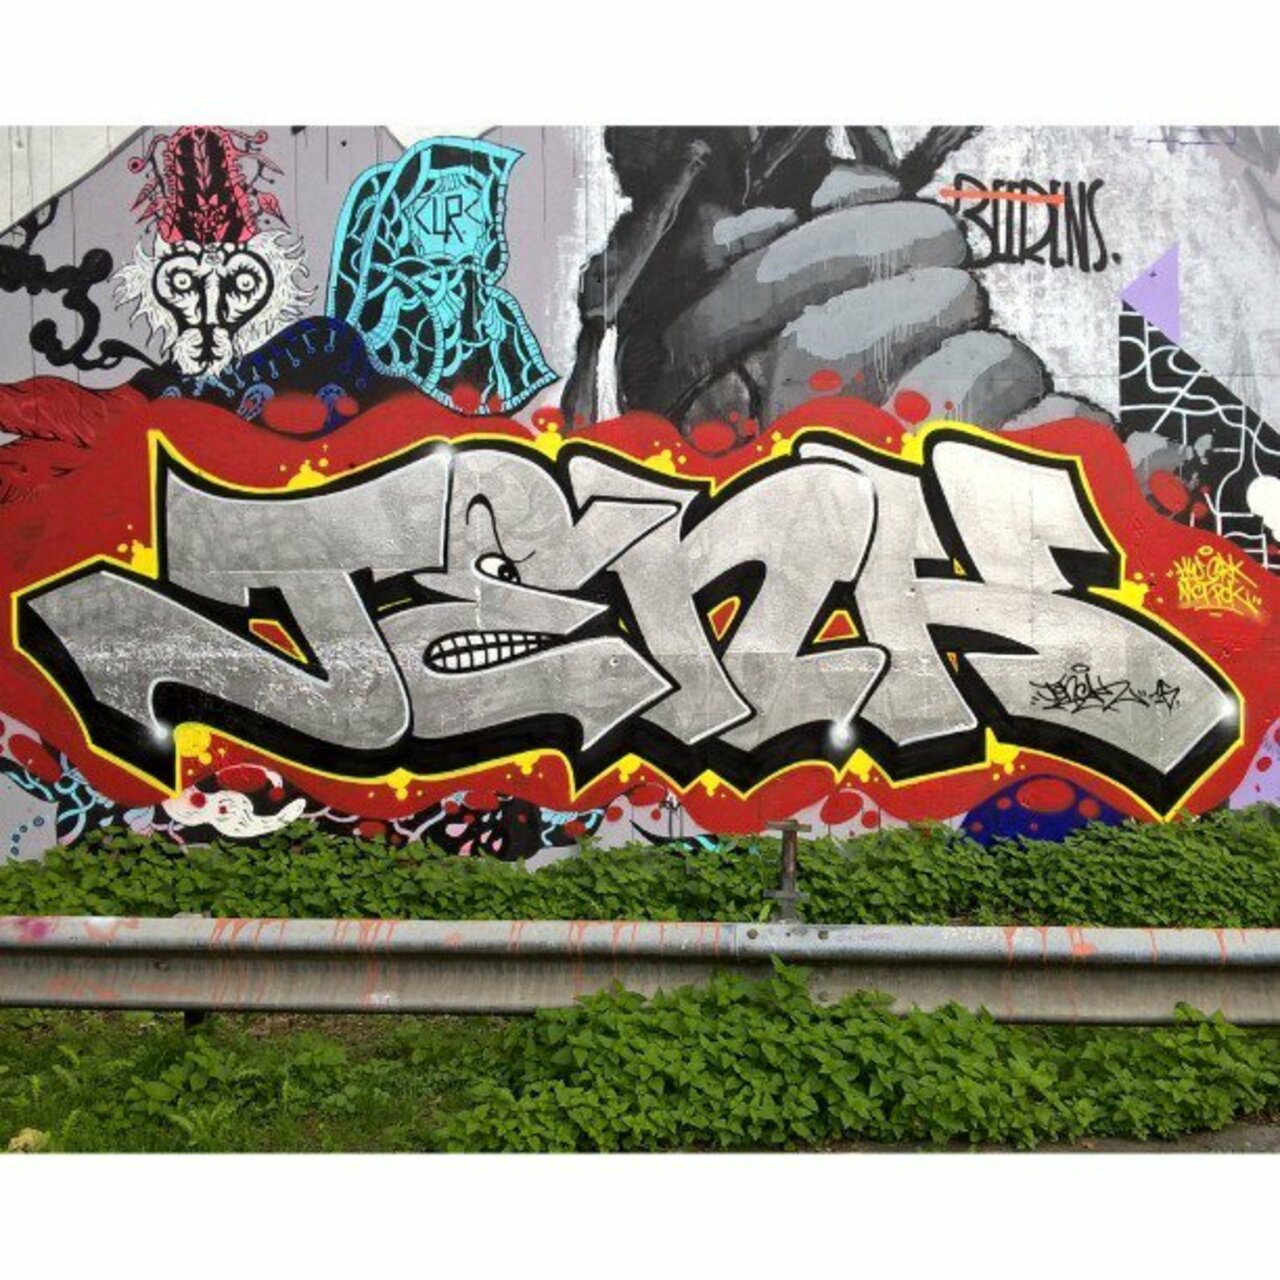 JENK
#streetart #graffiti #graff #art #fatcap #bombing #sprayart #spraycanart #wallart #handstyle #lettering #urban… https://t.co/XpHb3ykoGs